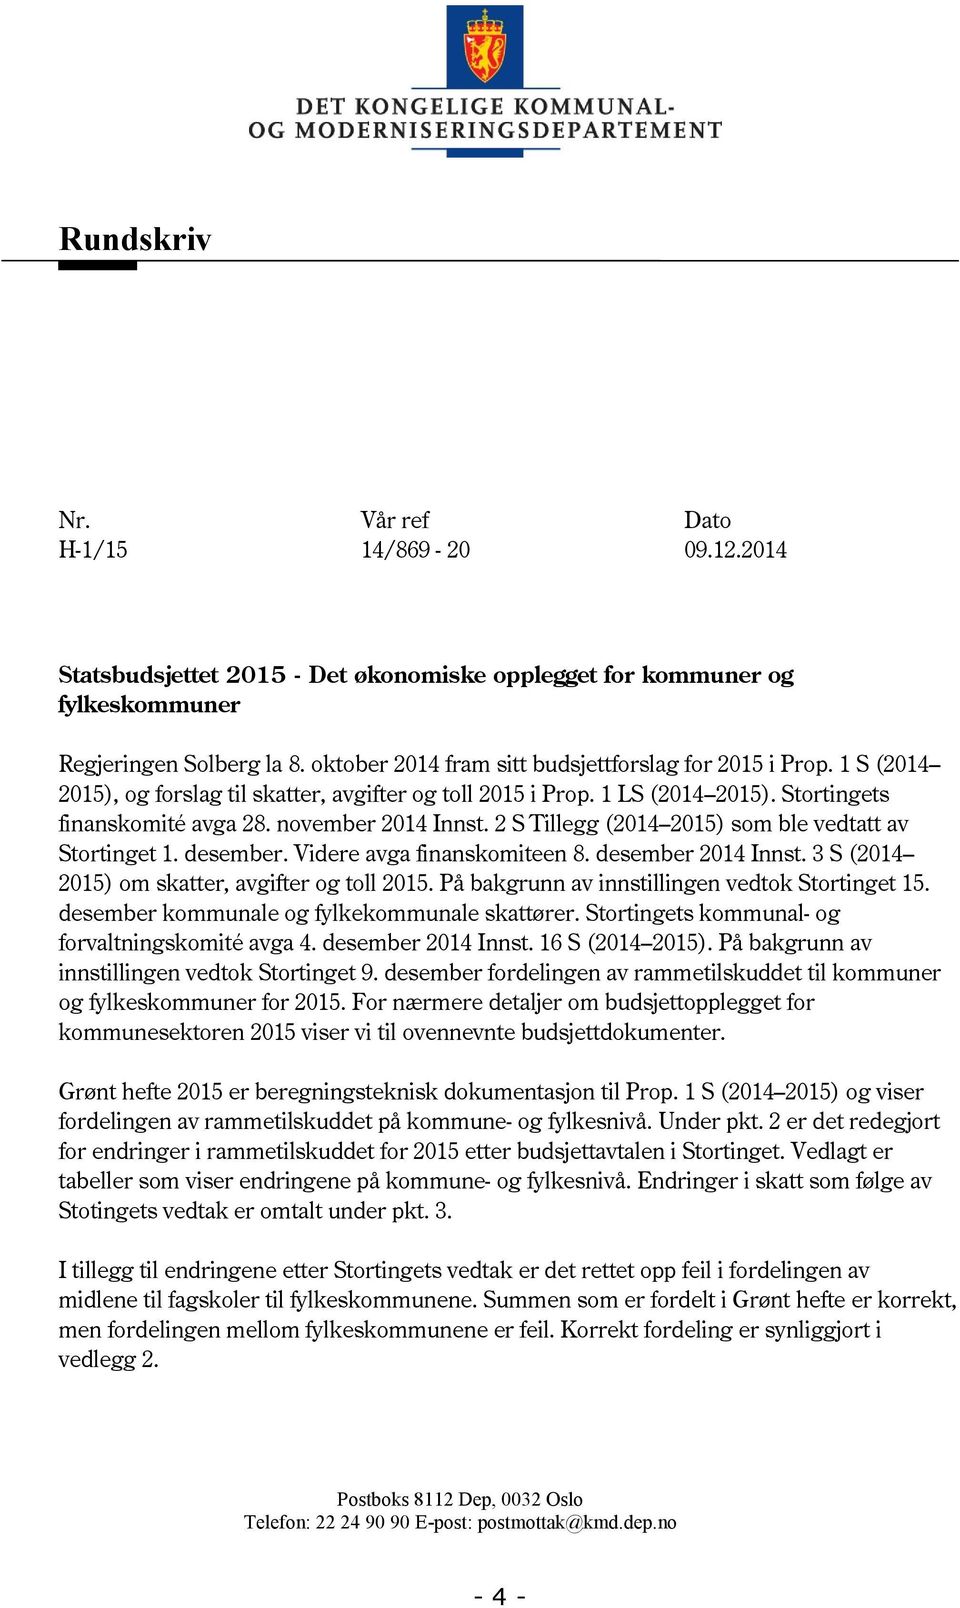 2 S Tillegg (2014 2015) som ble vedtatt av Stortinget 1. desember. Videre avga finanskomiteen 8. desember 2014 Innst. 3 S (2014 2015) om skatter, avgifter og toll 2015.